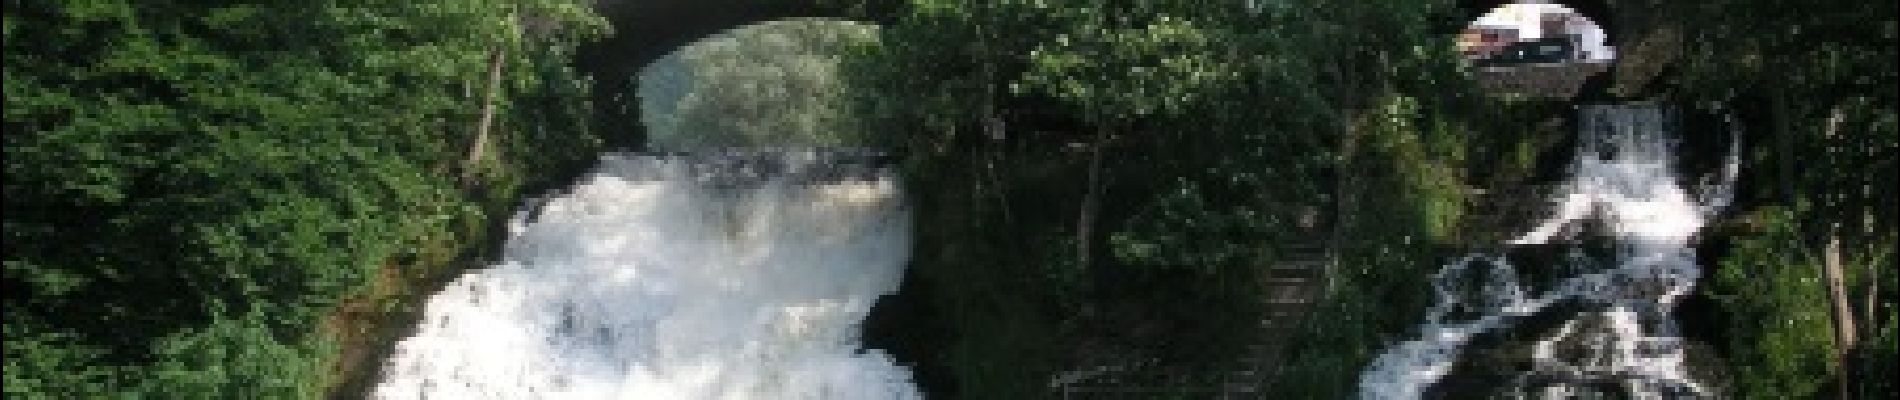 POI Stablo - Coo Waterfalls - Photo